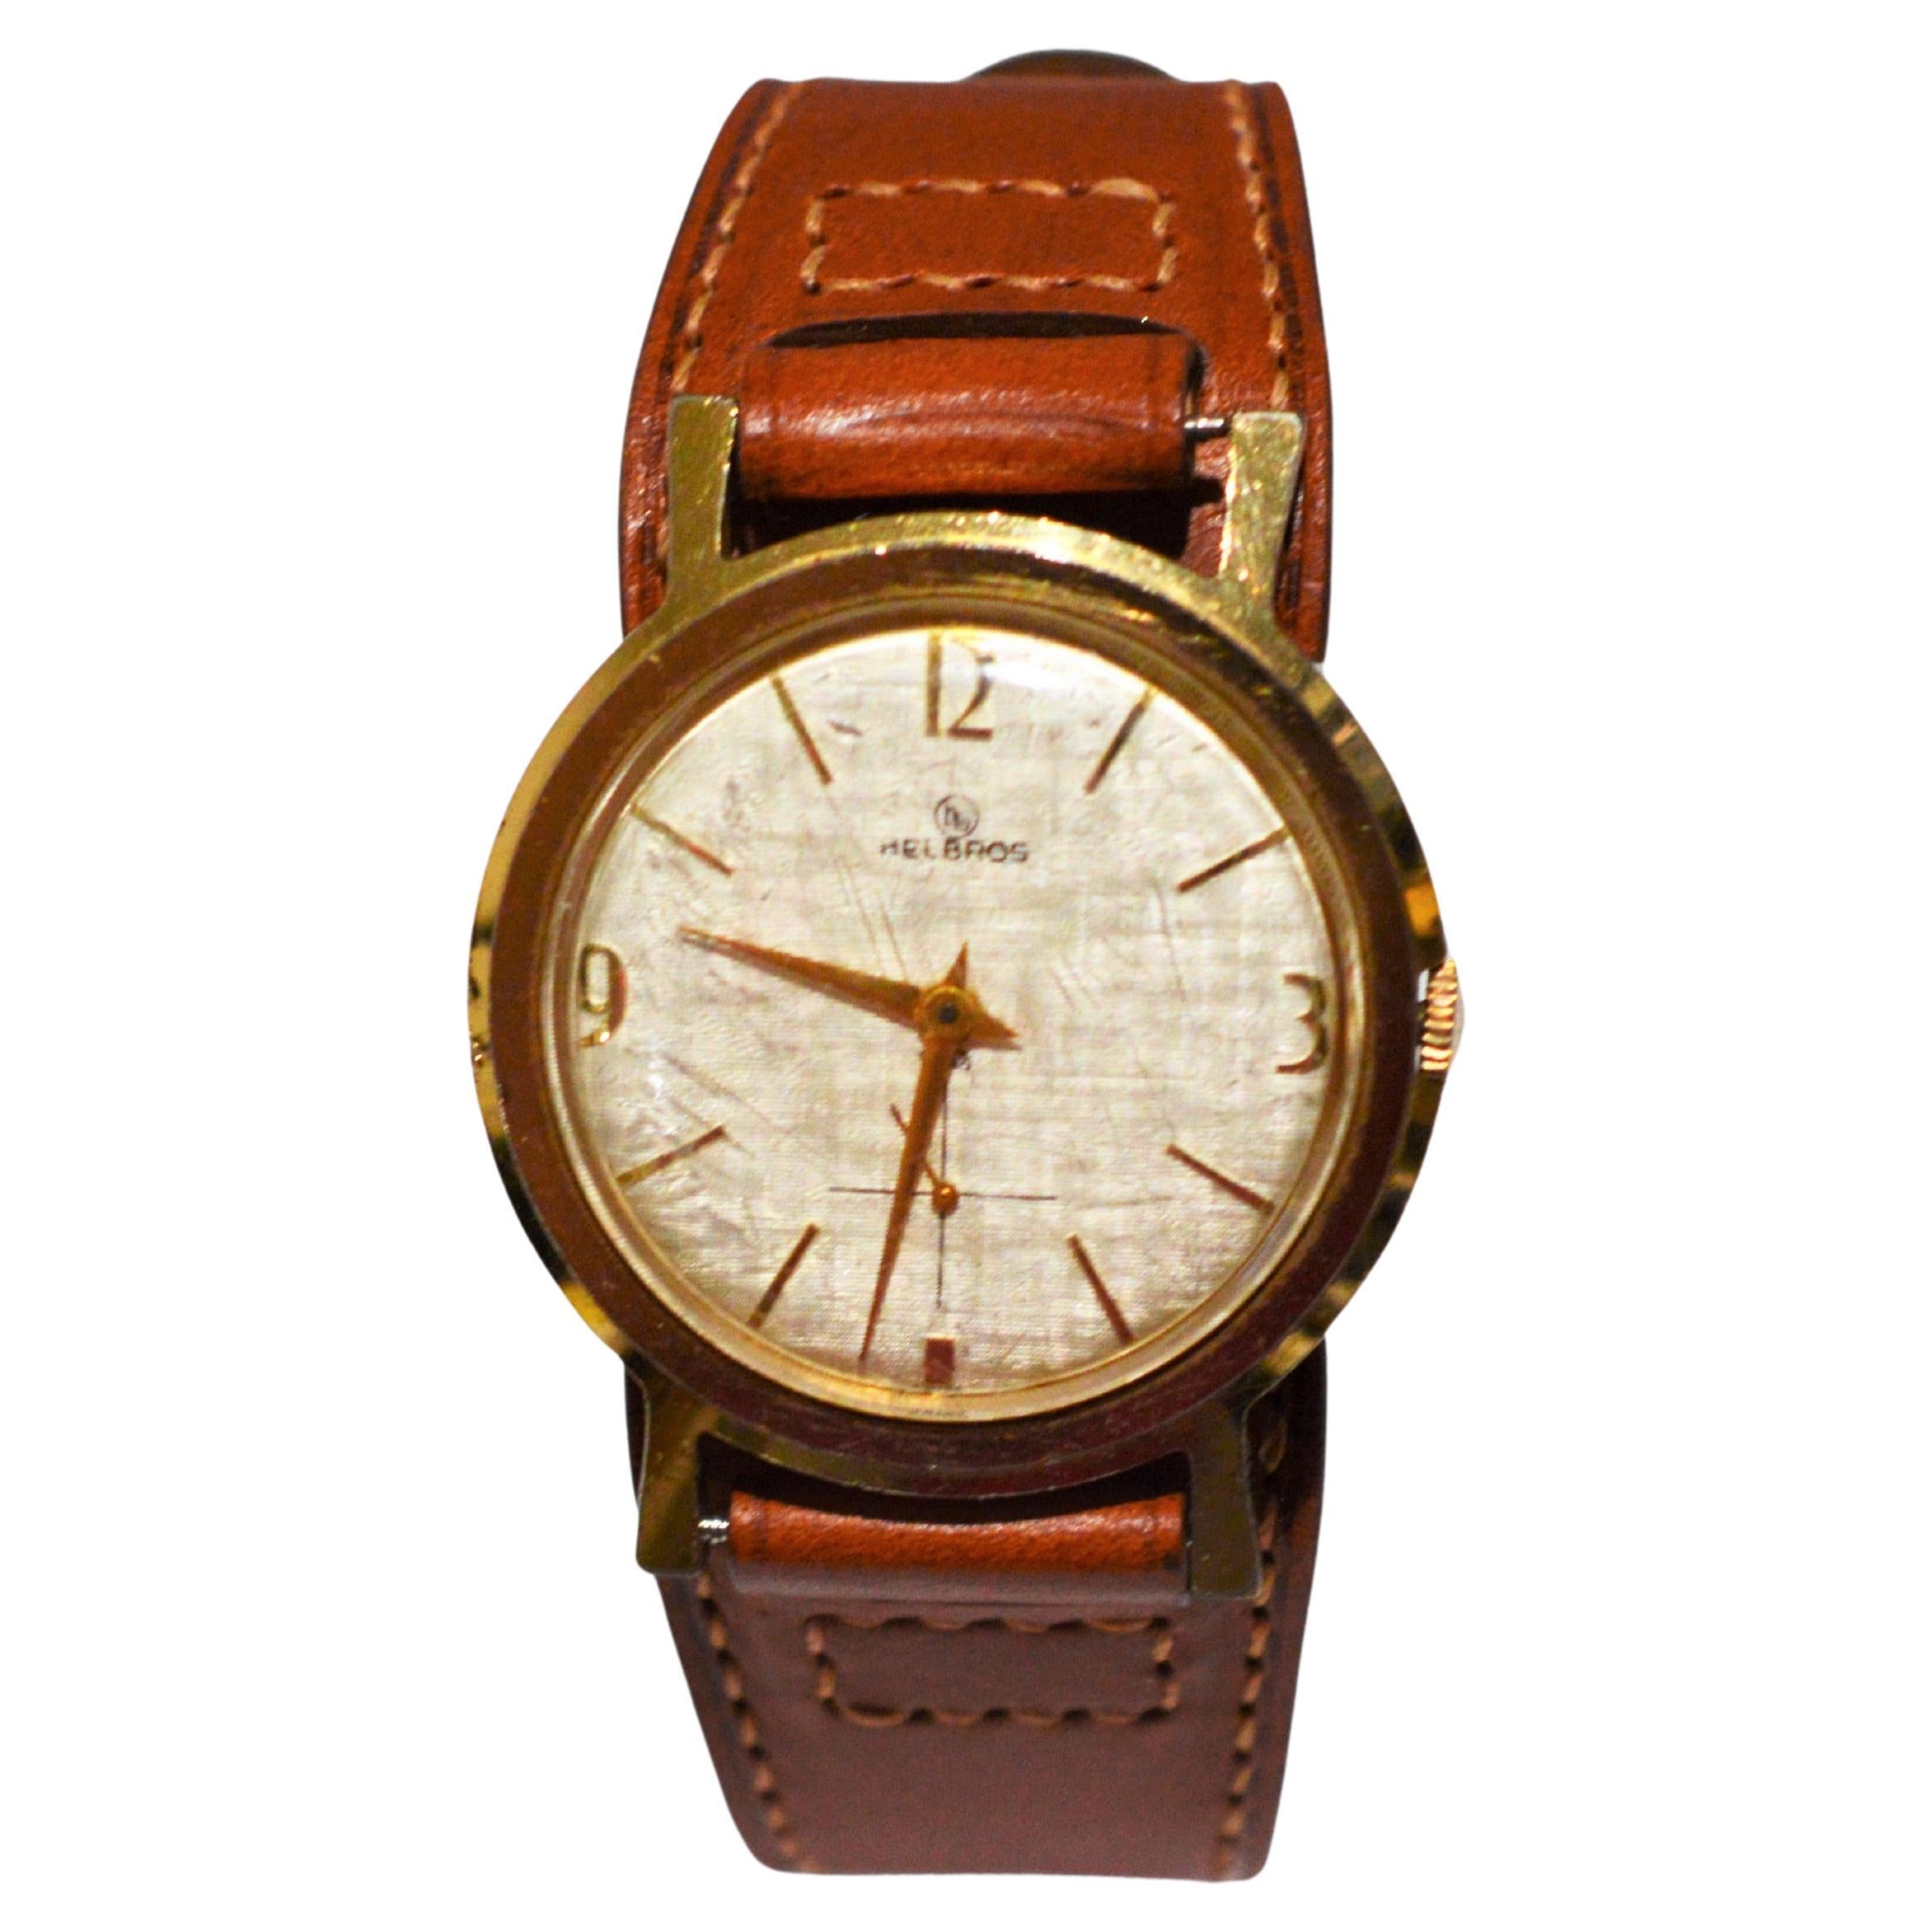 Reloj de pulsera Helbros Modelo 83 Clásico de los años 50 con correa Bund de estilo militar 